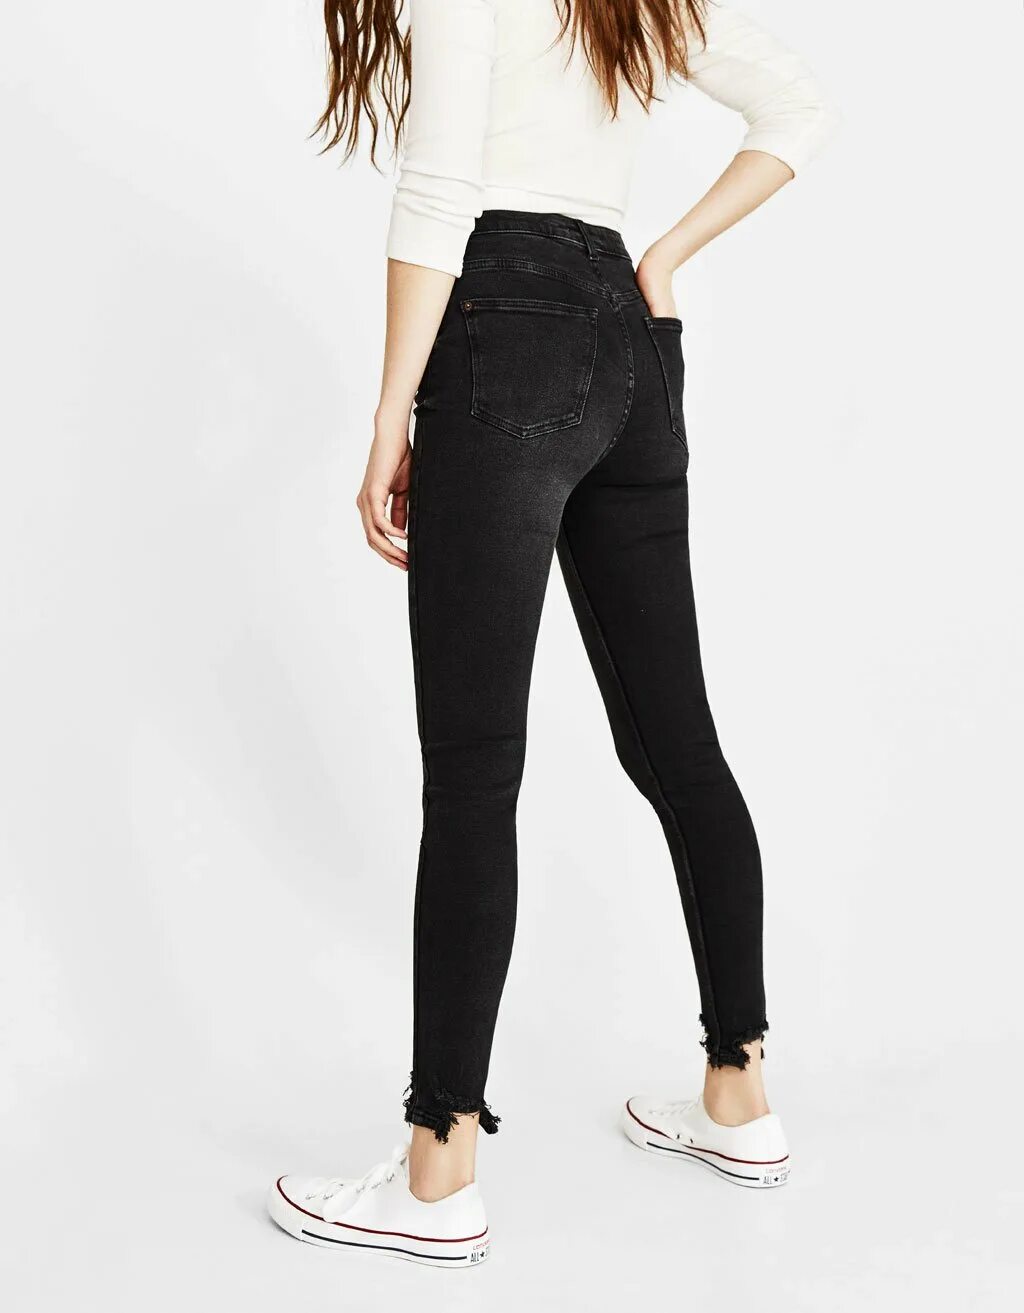 Черные брюки с белыми швами. Скинни черные для девочек. Скини для девочек джинсы черные. Черные скинни джинсы на белом фоне. Черные джинсы с белыми швами.